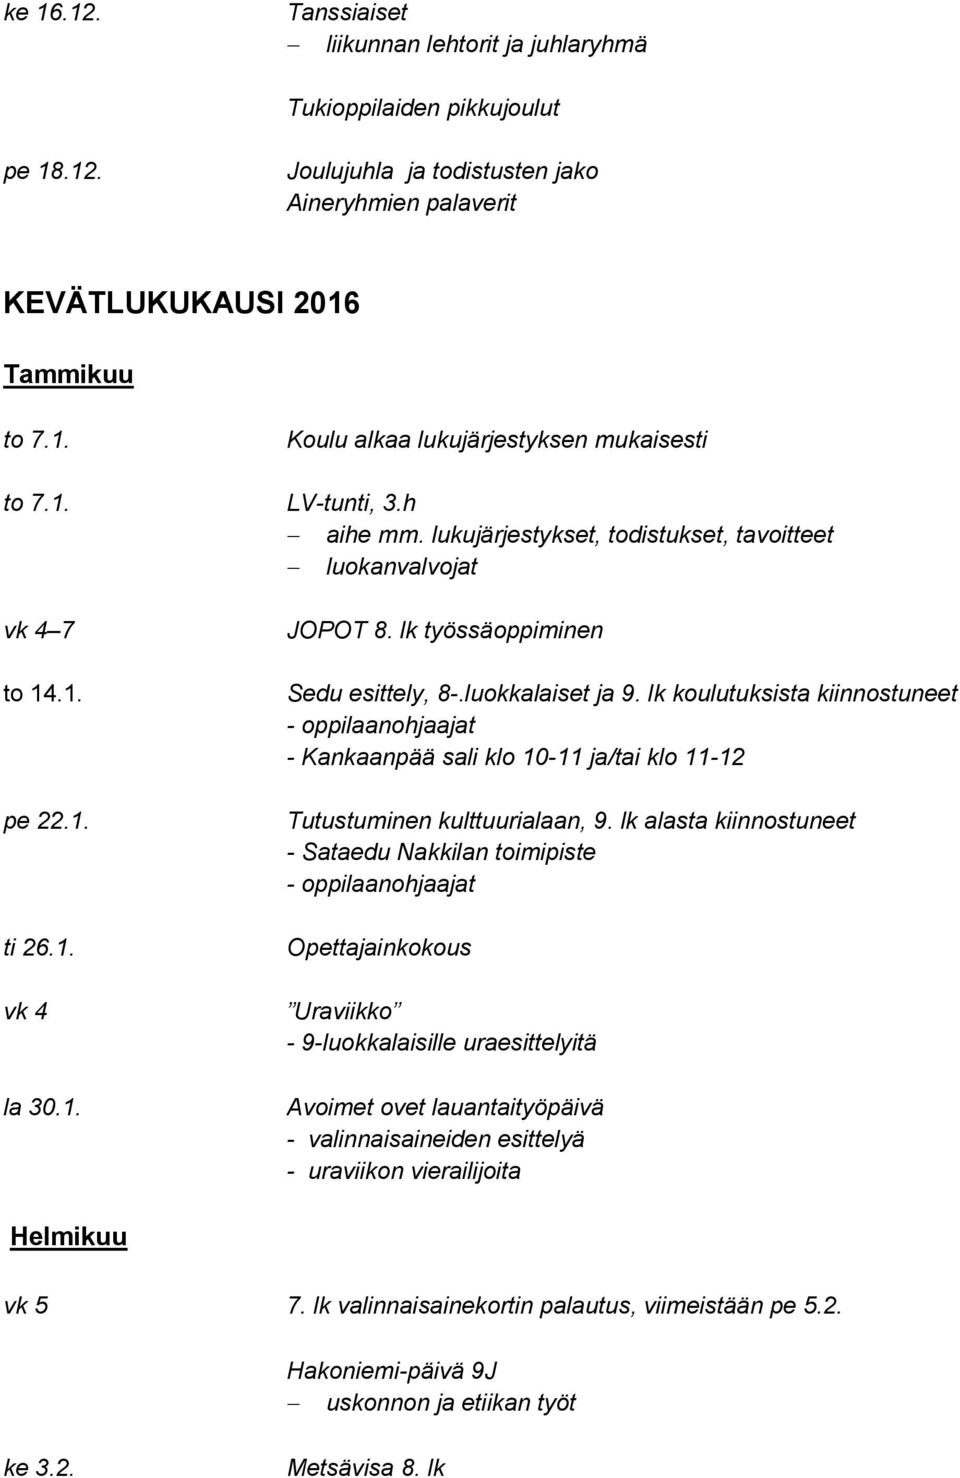 lk koulutuksista kiinnostuneet - Kankaanpää sali klo 10-11 ja/tai klo 11-12 Tutustuminen kulttuurialaan, 9.